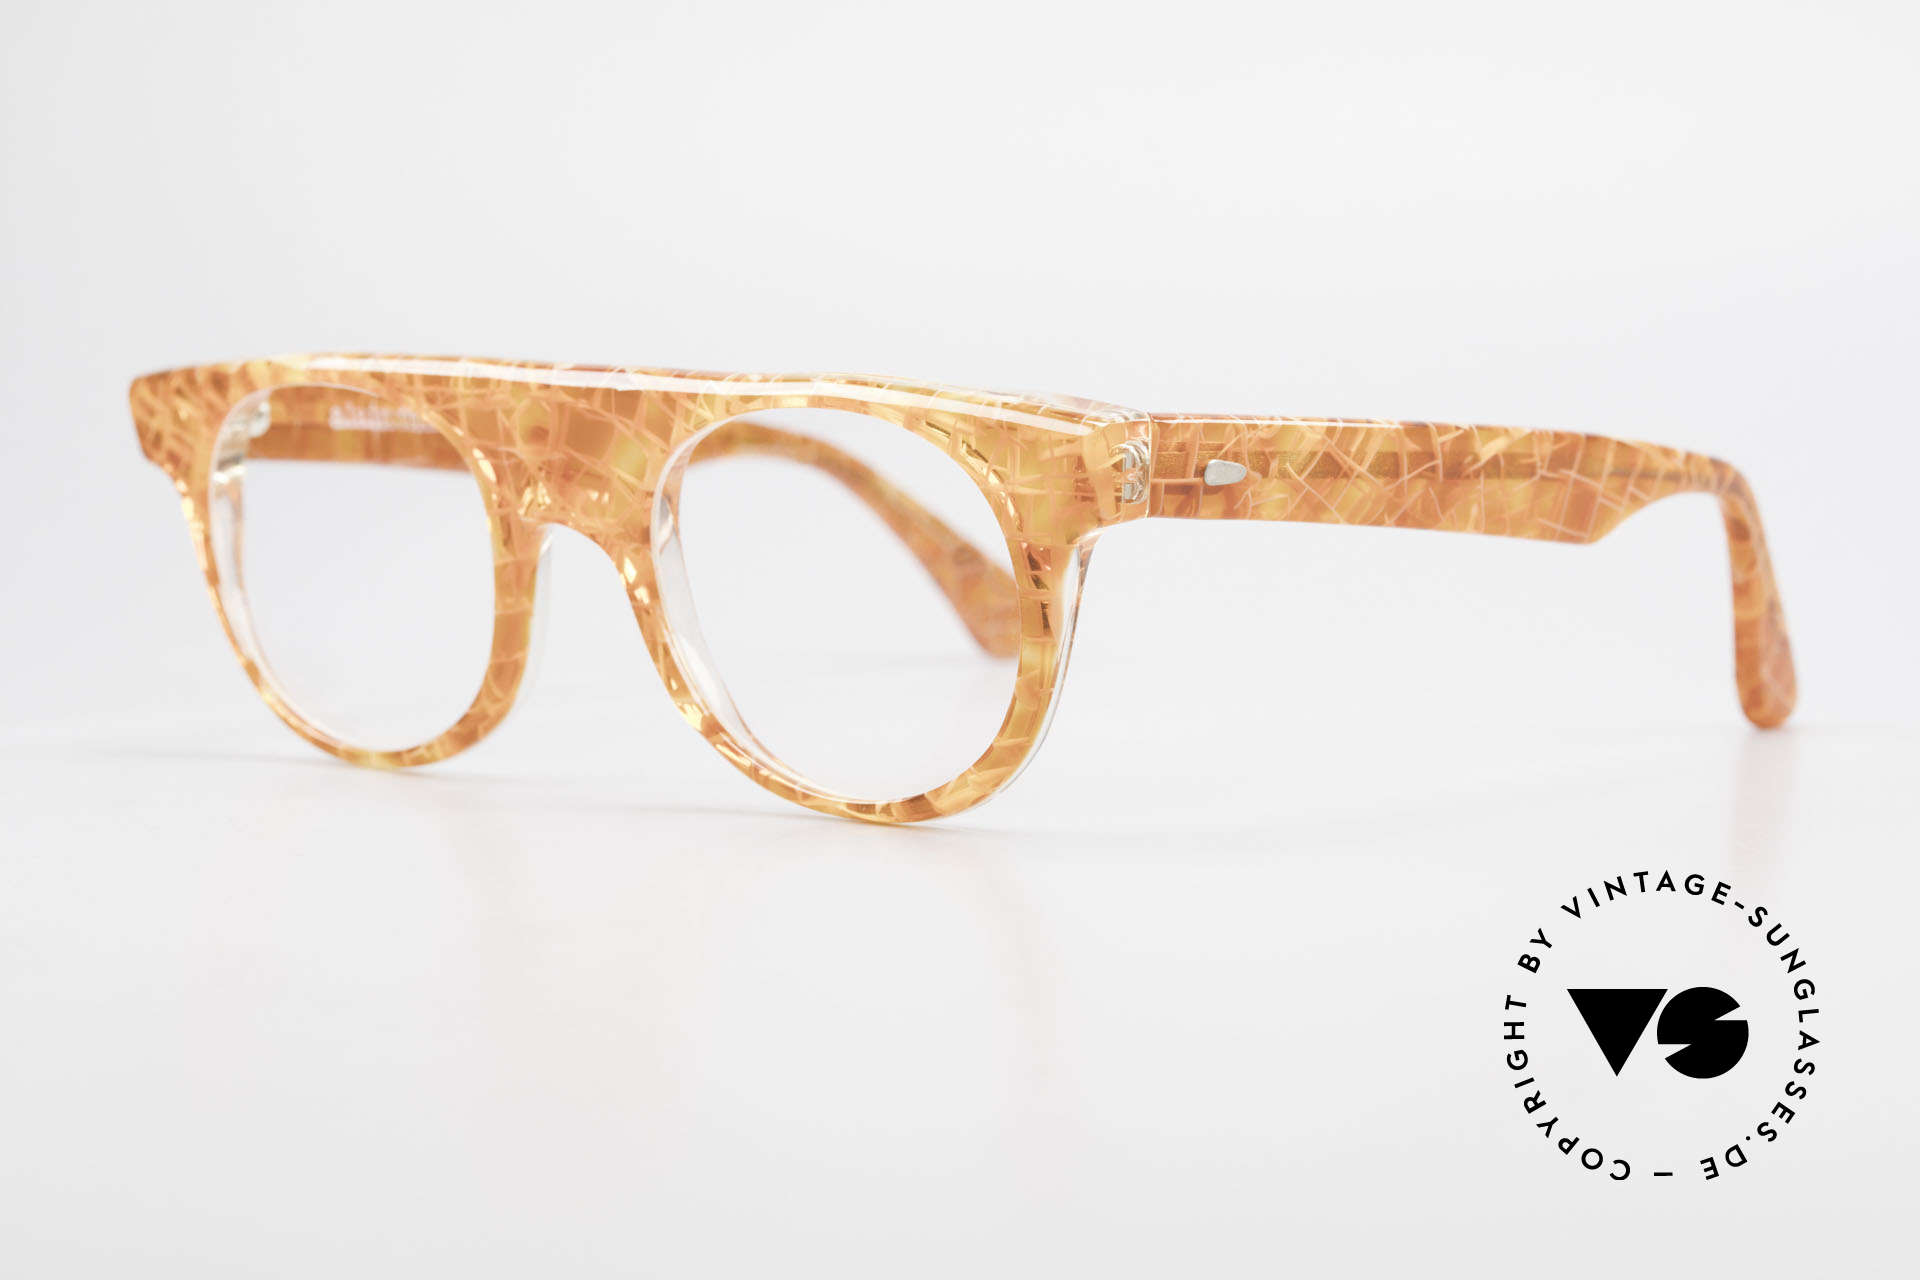 Alain Mikli 0127 / 166 80's Designer Eyeglass-Frame, quality eyeglasses (Hand Made in France) from 1986, Made for Women